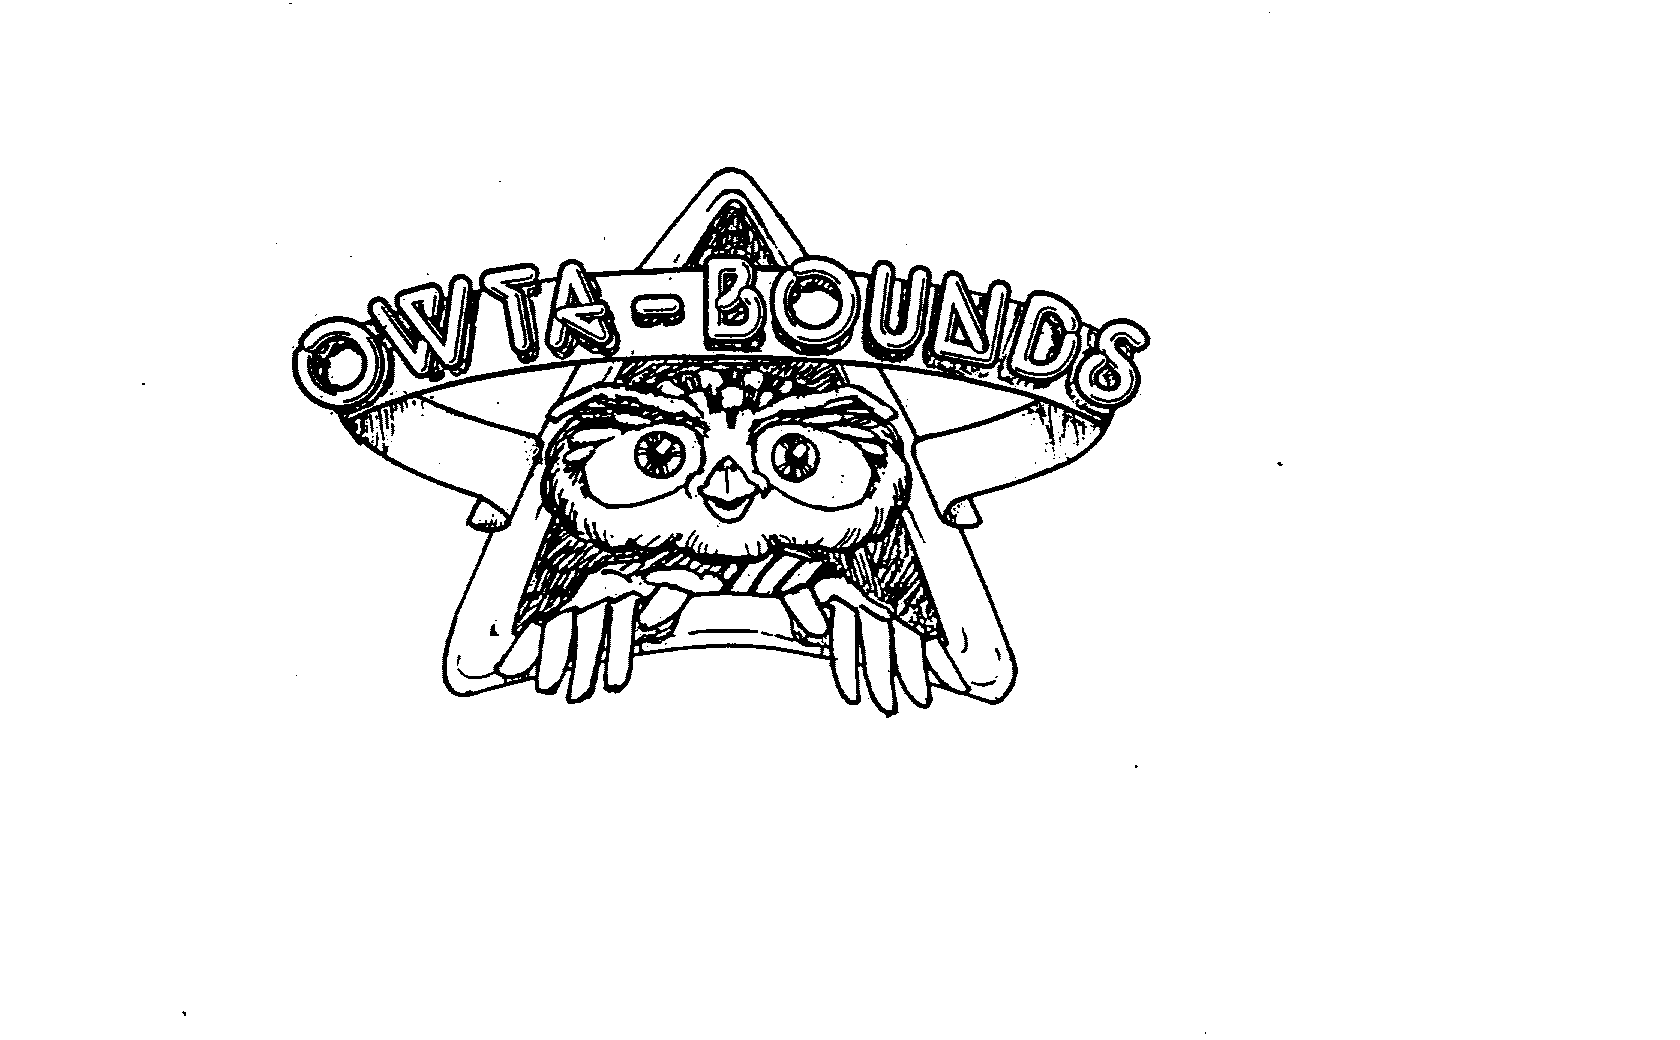  OWTA-BOUNDS